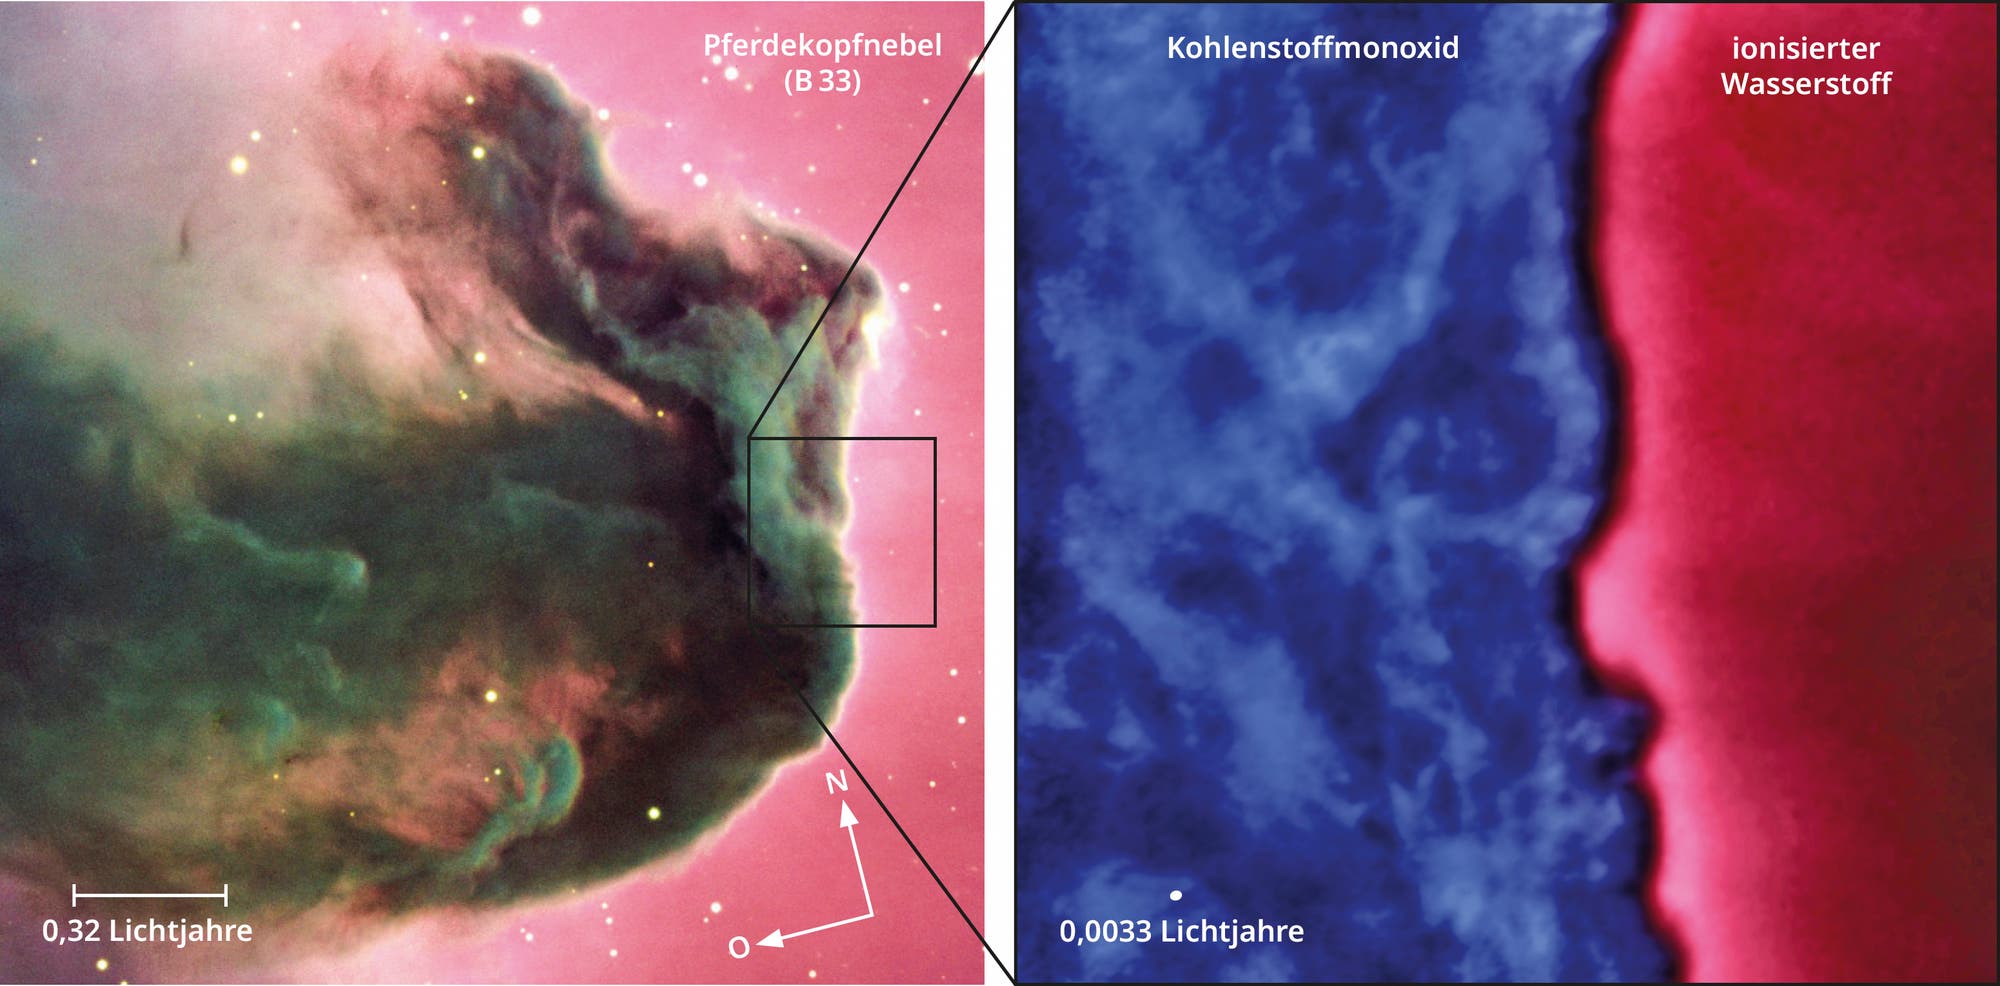 Das Bild zeigt den Pferdekopfnebel im Sternbild Orion bei sichtbaren Wellenlängen, sowie einen vergrößerten Ausschnitt. Dieser Wurde im Radiobereich aufgenommen und zeigt den schmalen Übergangsbereich zwischen kaltem und ionisiertem Gas. 